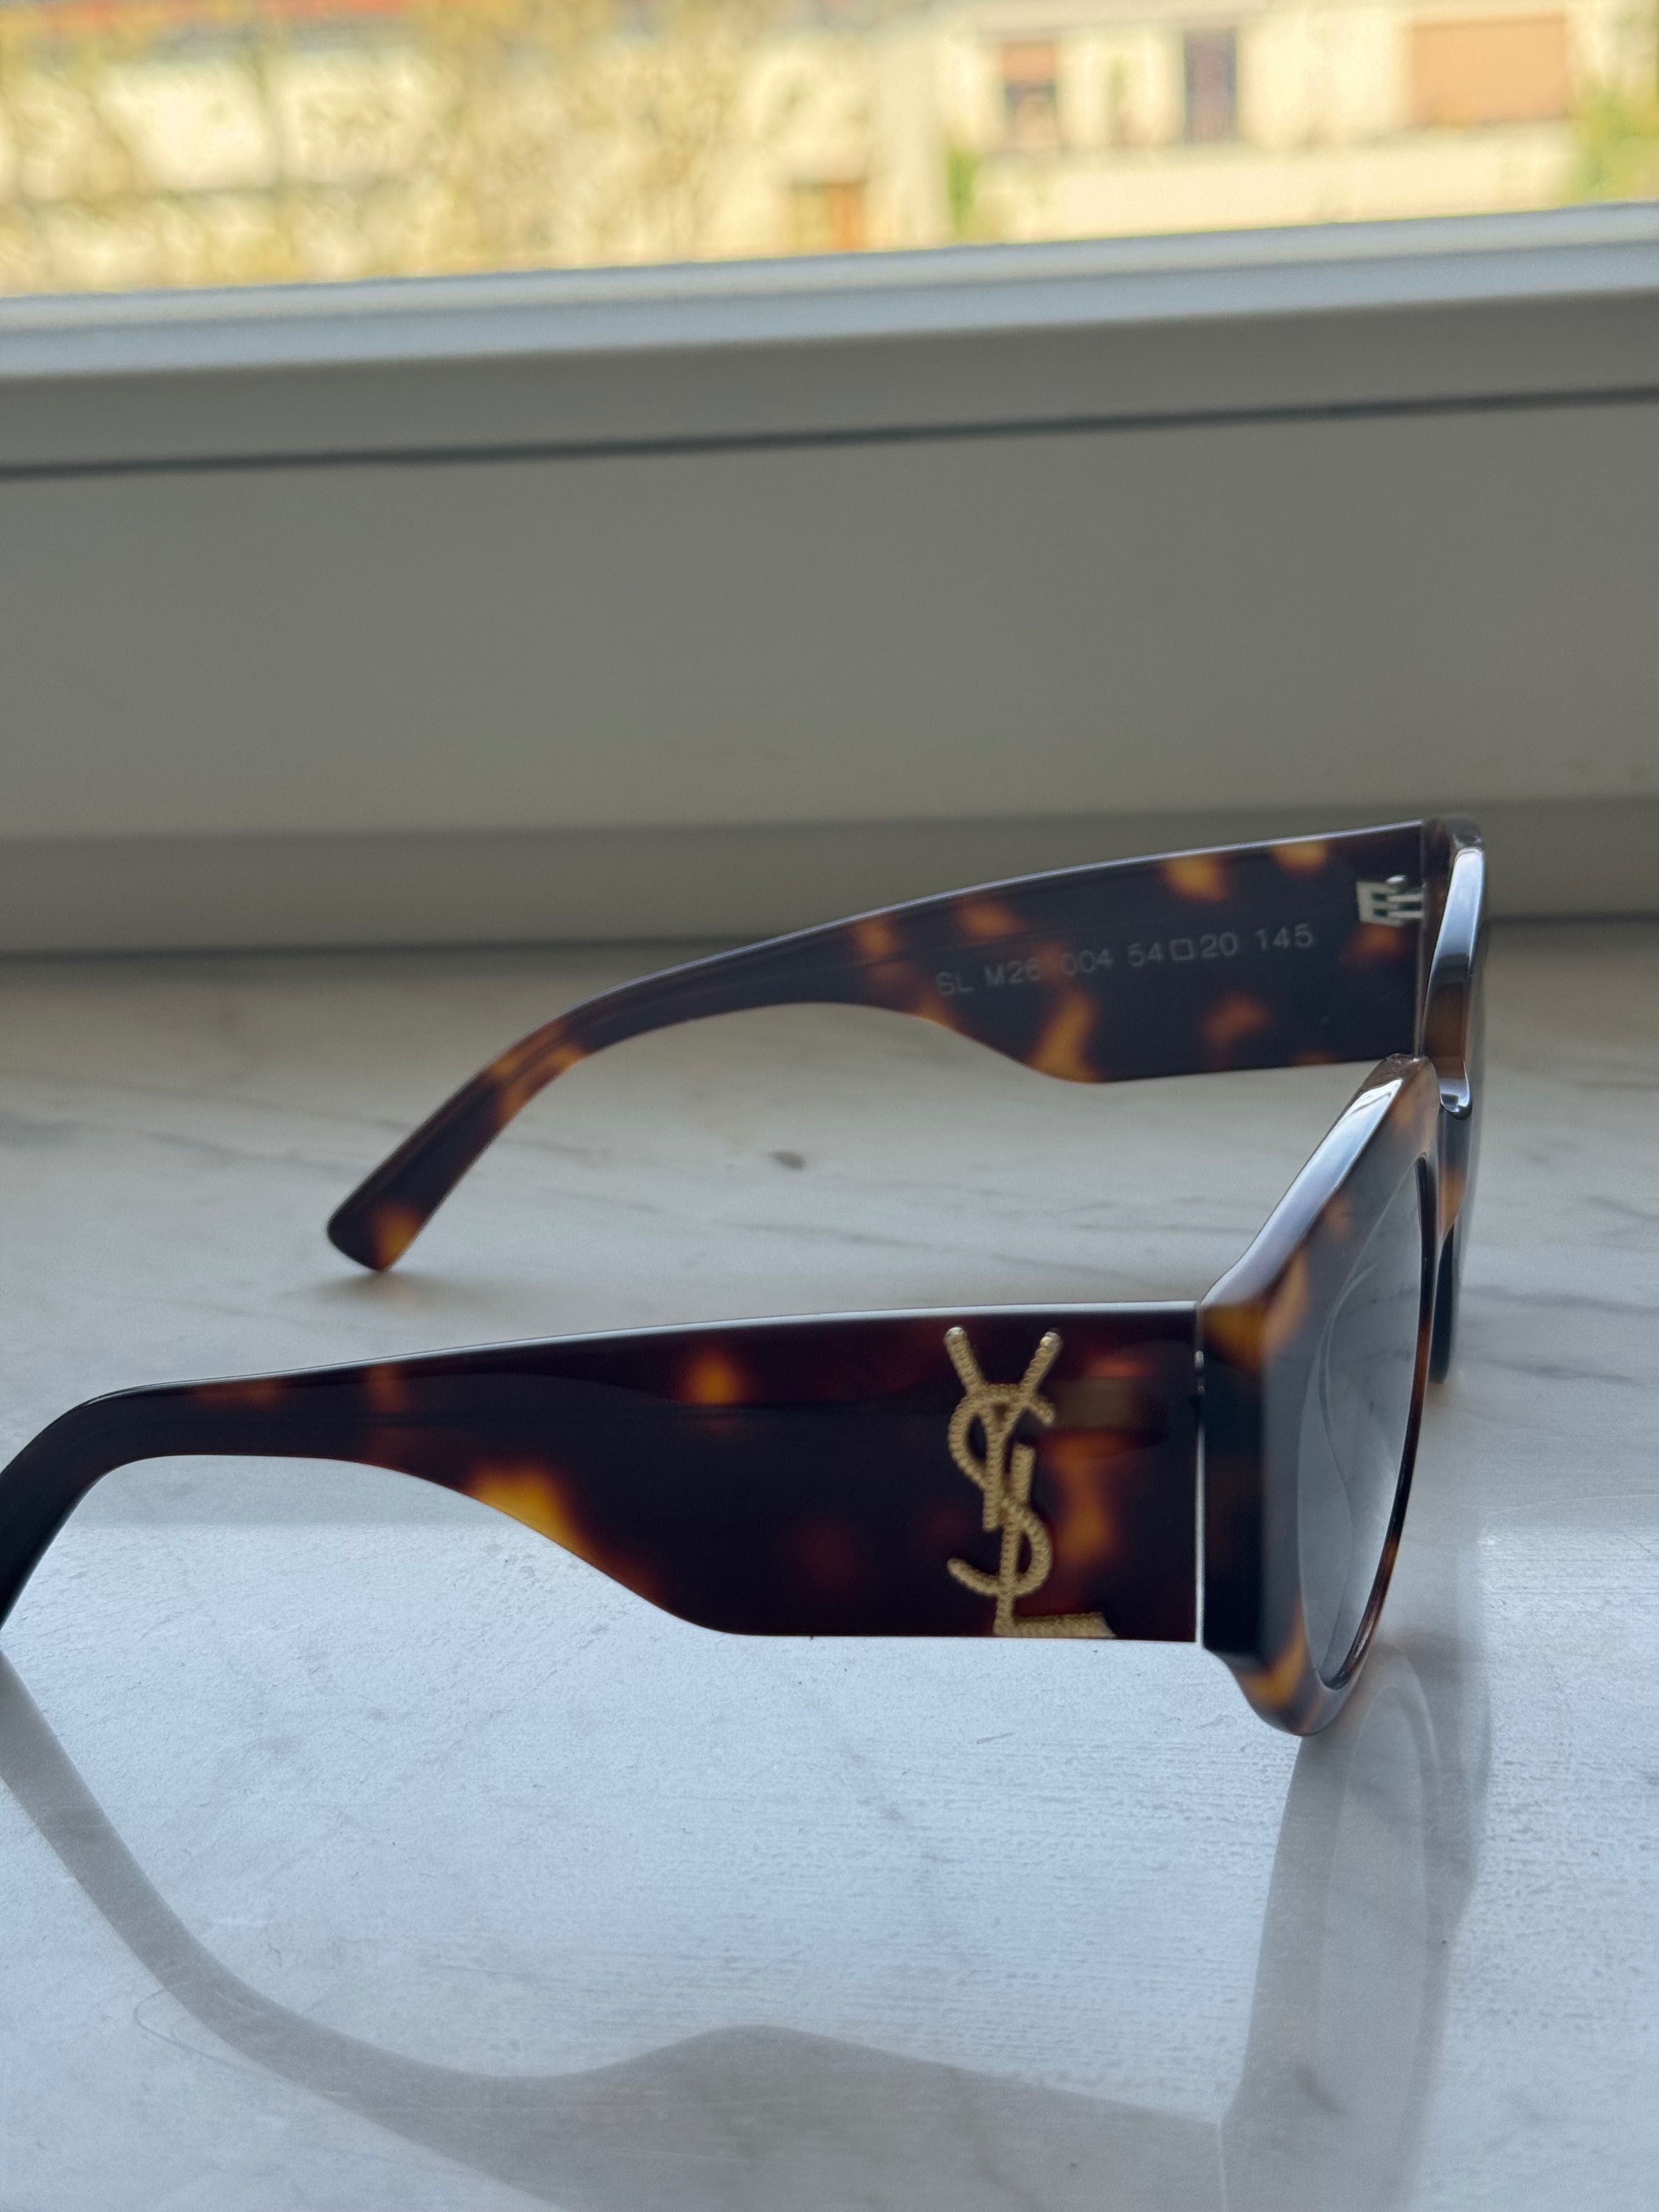 Ysl sunglasses great condition